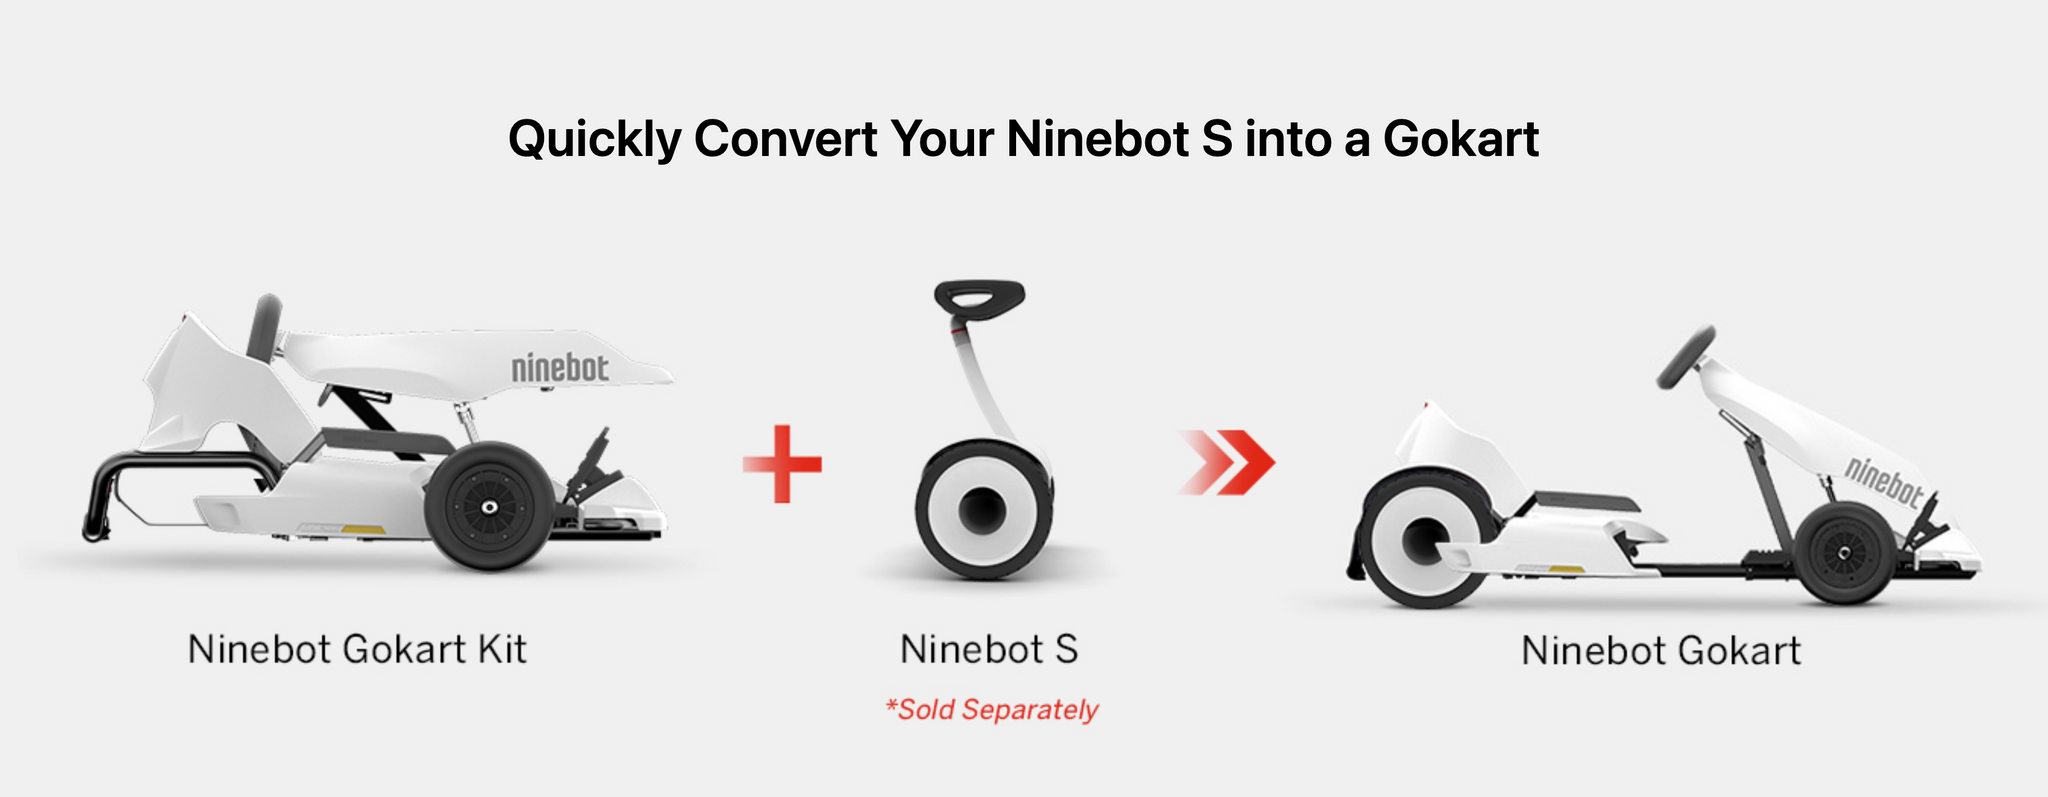 Ninebot Gokart Kit (Ninebot S included)